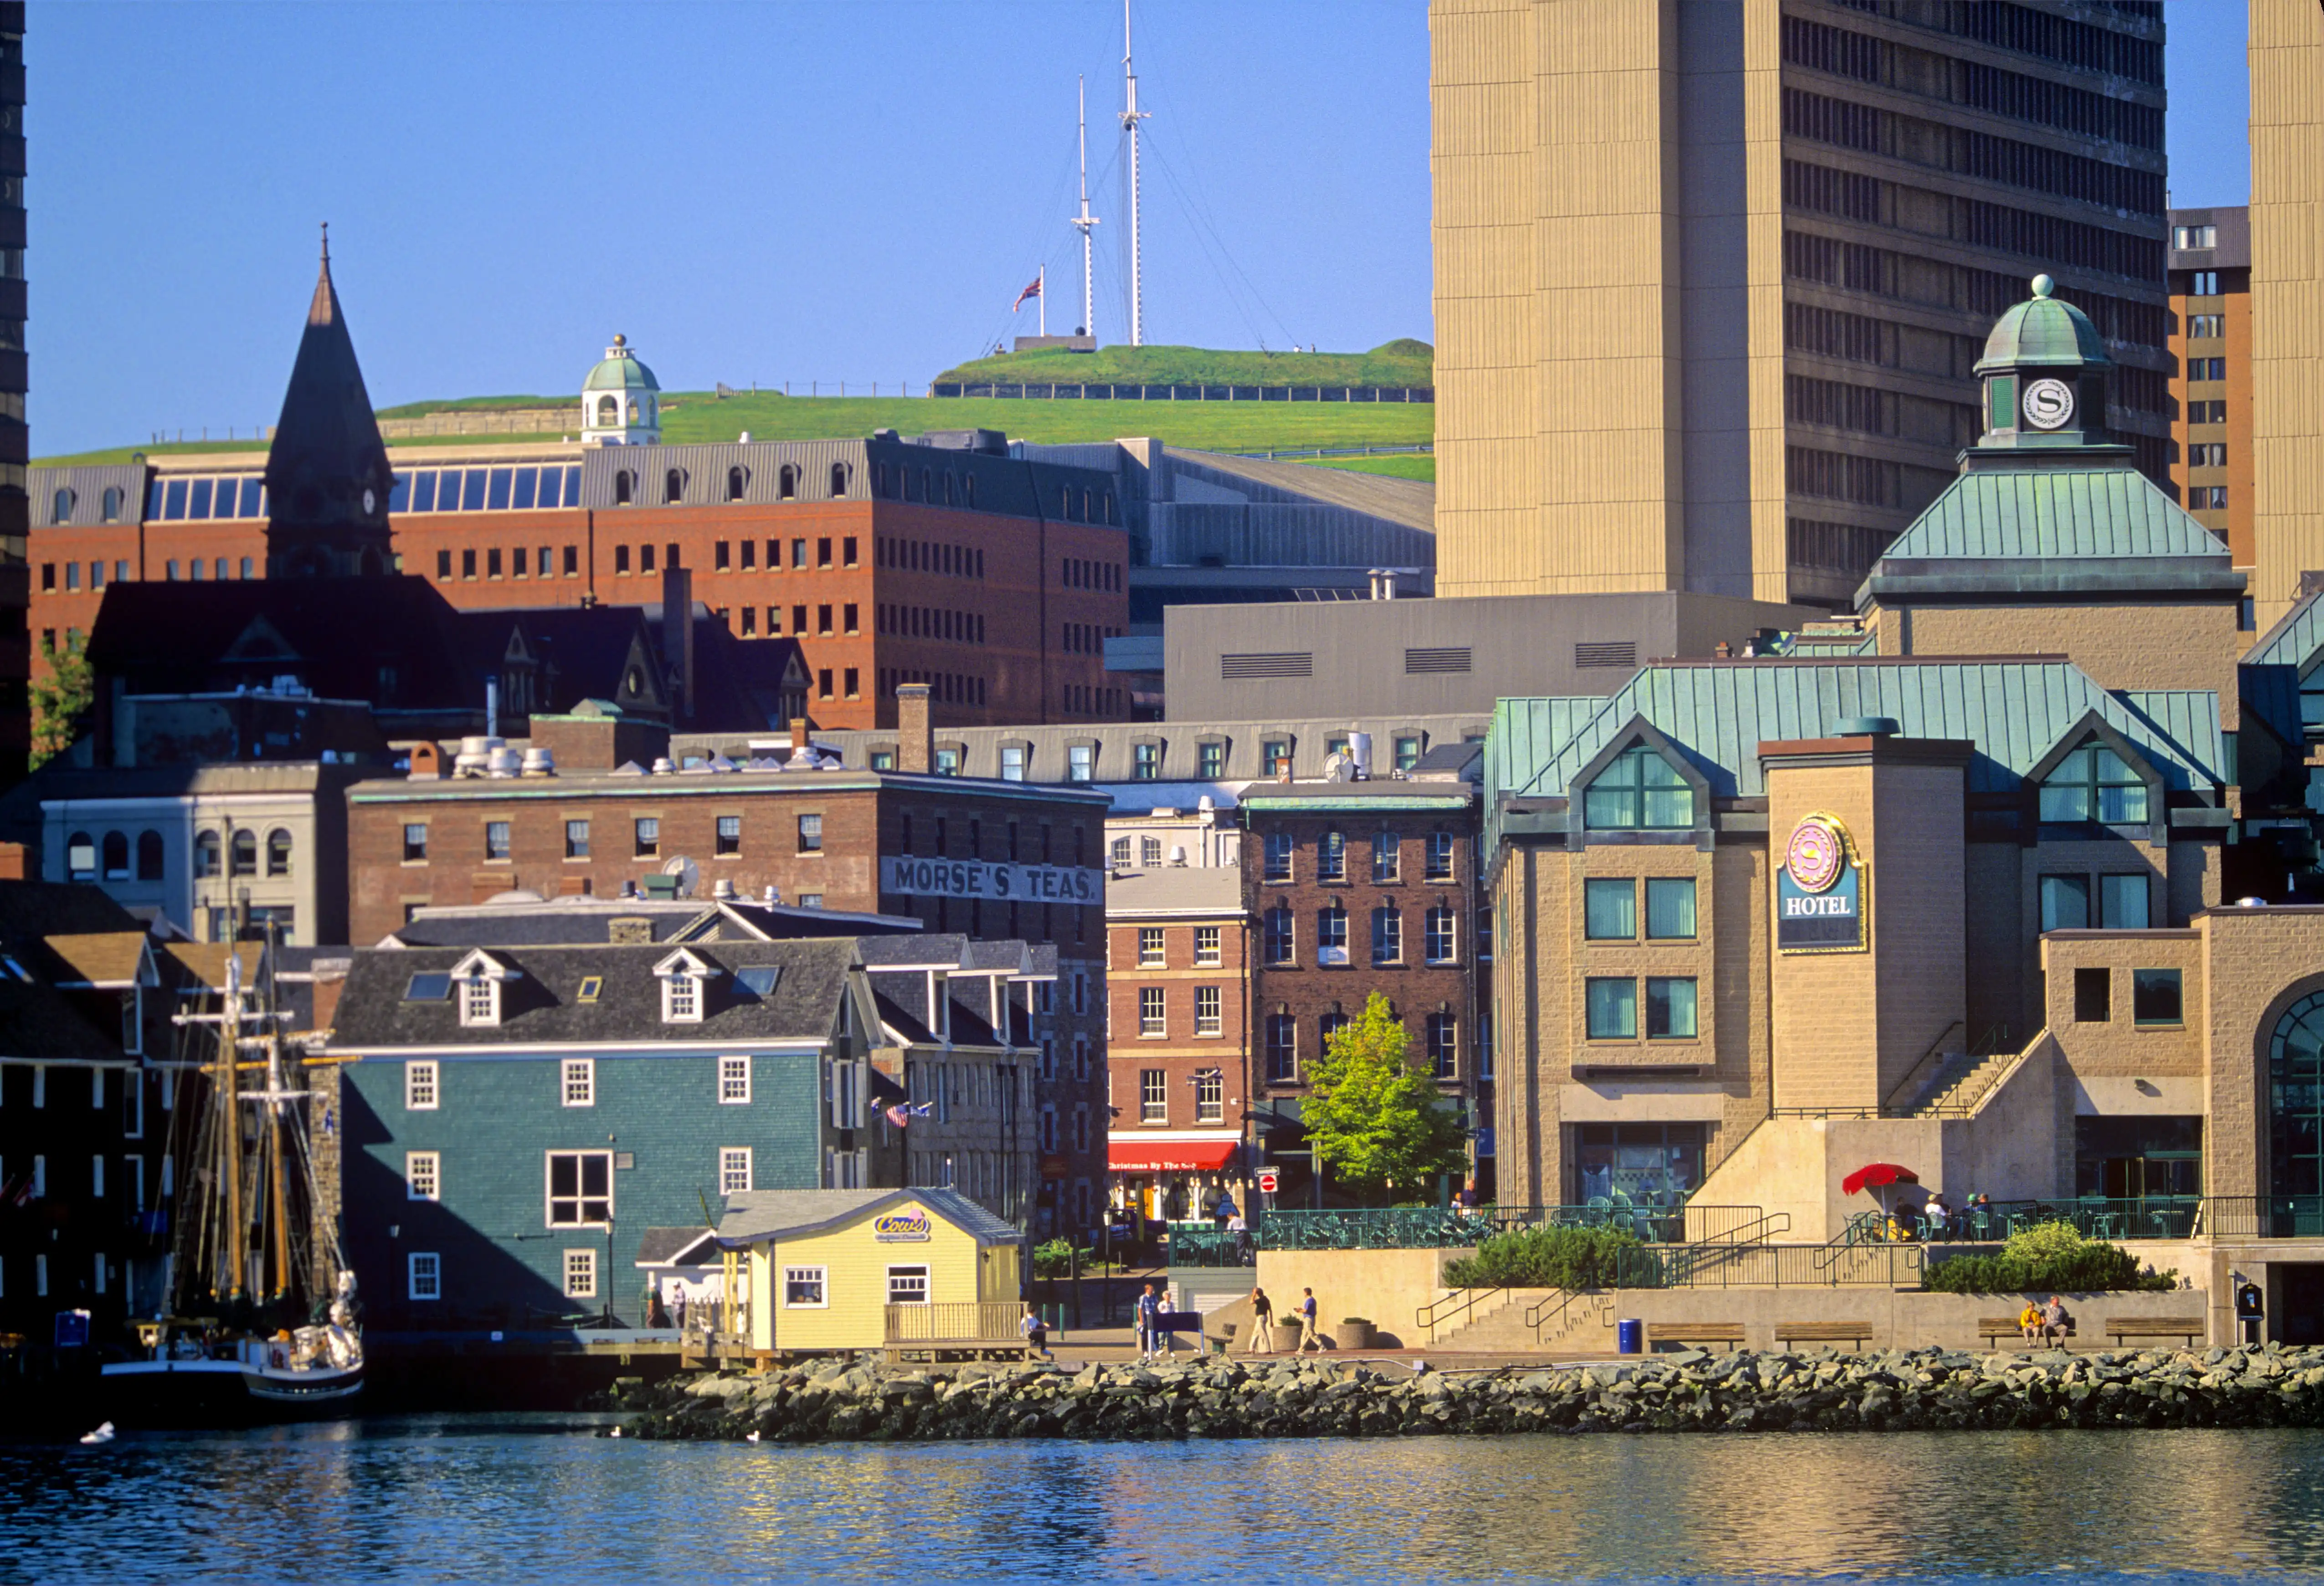 Halifax tourism